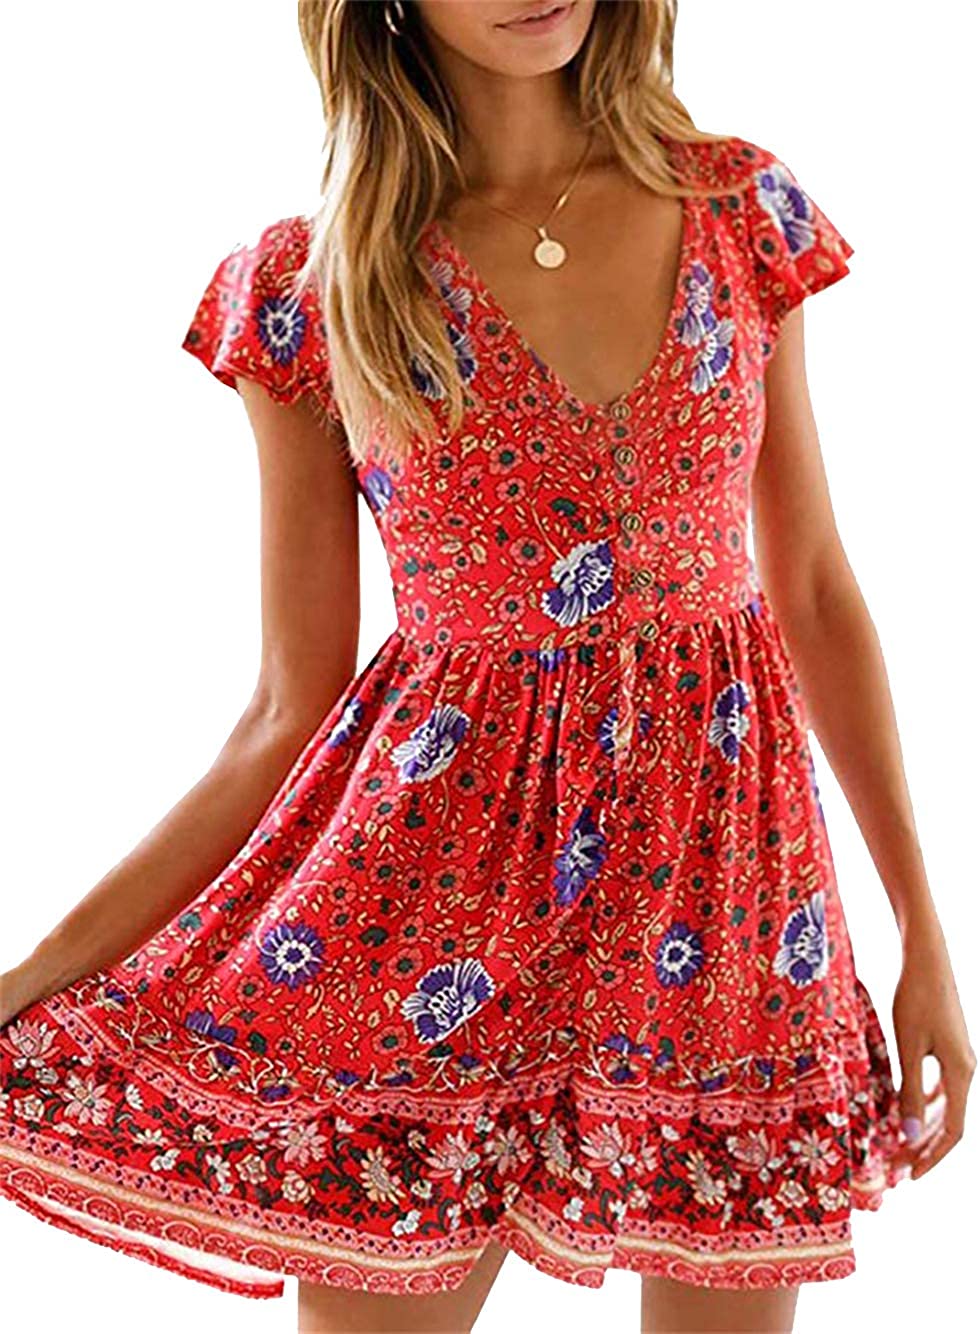 Women’s Summer Hot Short Sleeve V-Neck High Waist Floral Print Mini Boho Sun Dress with Button